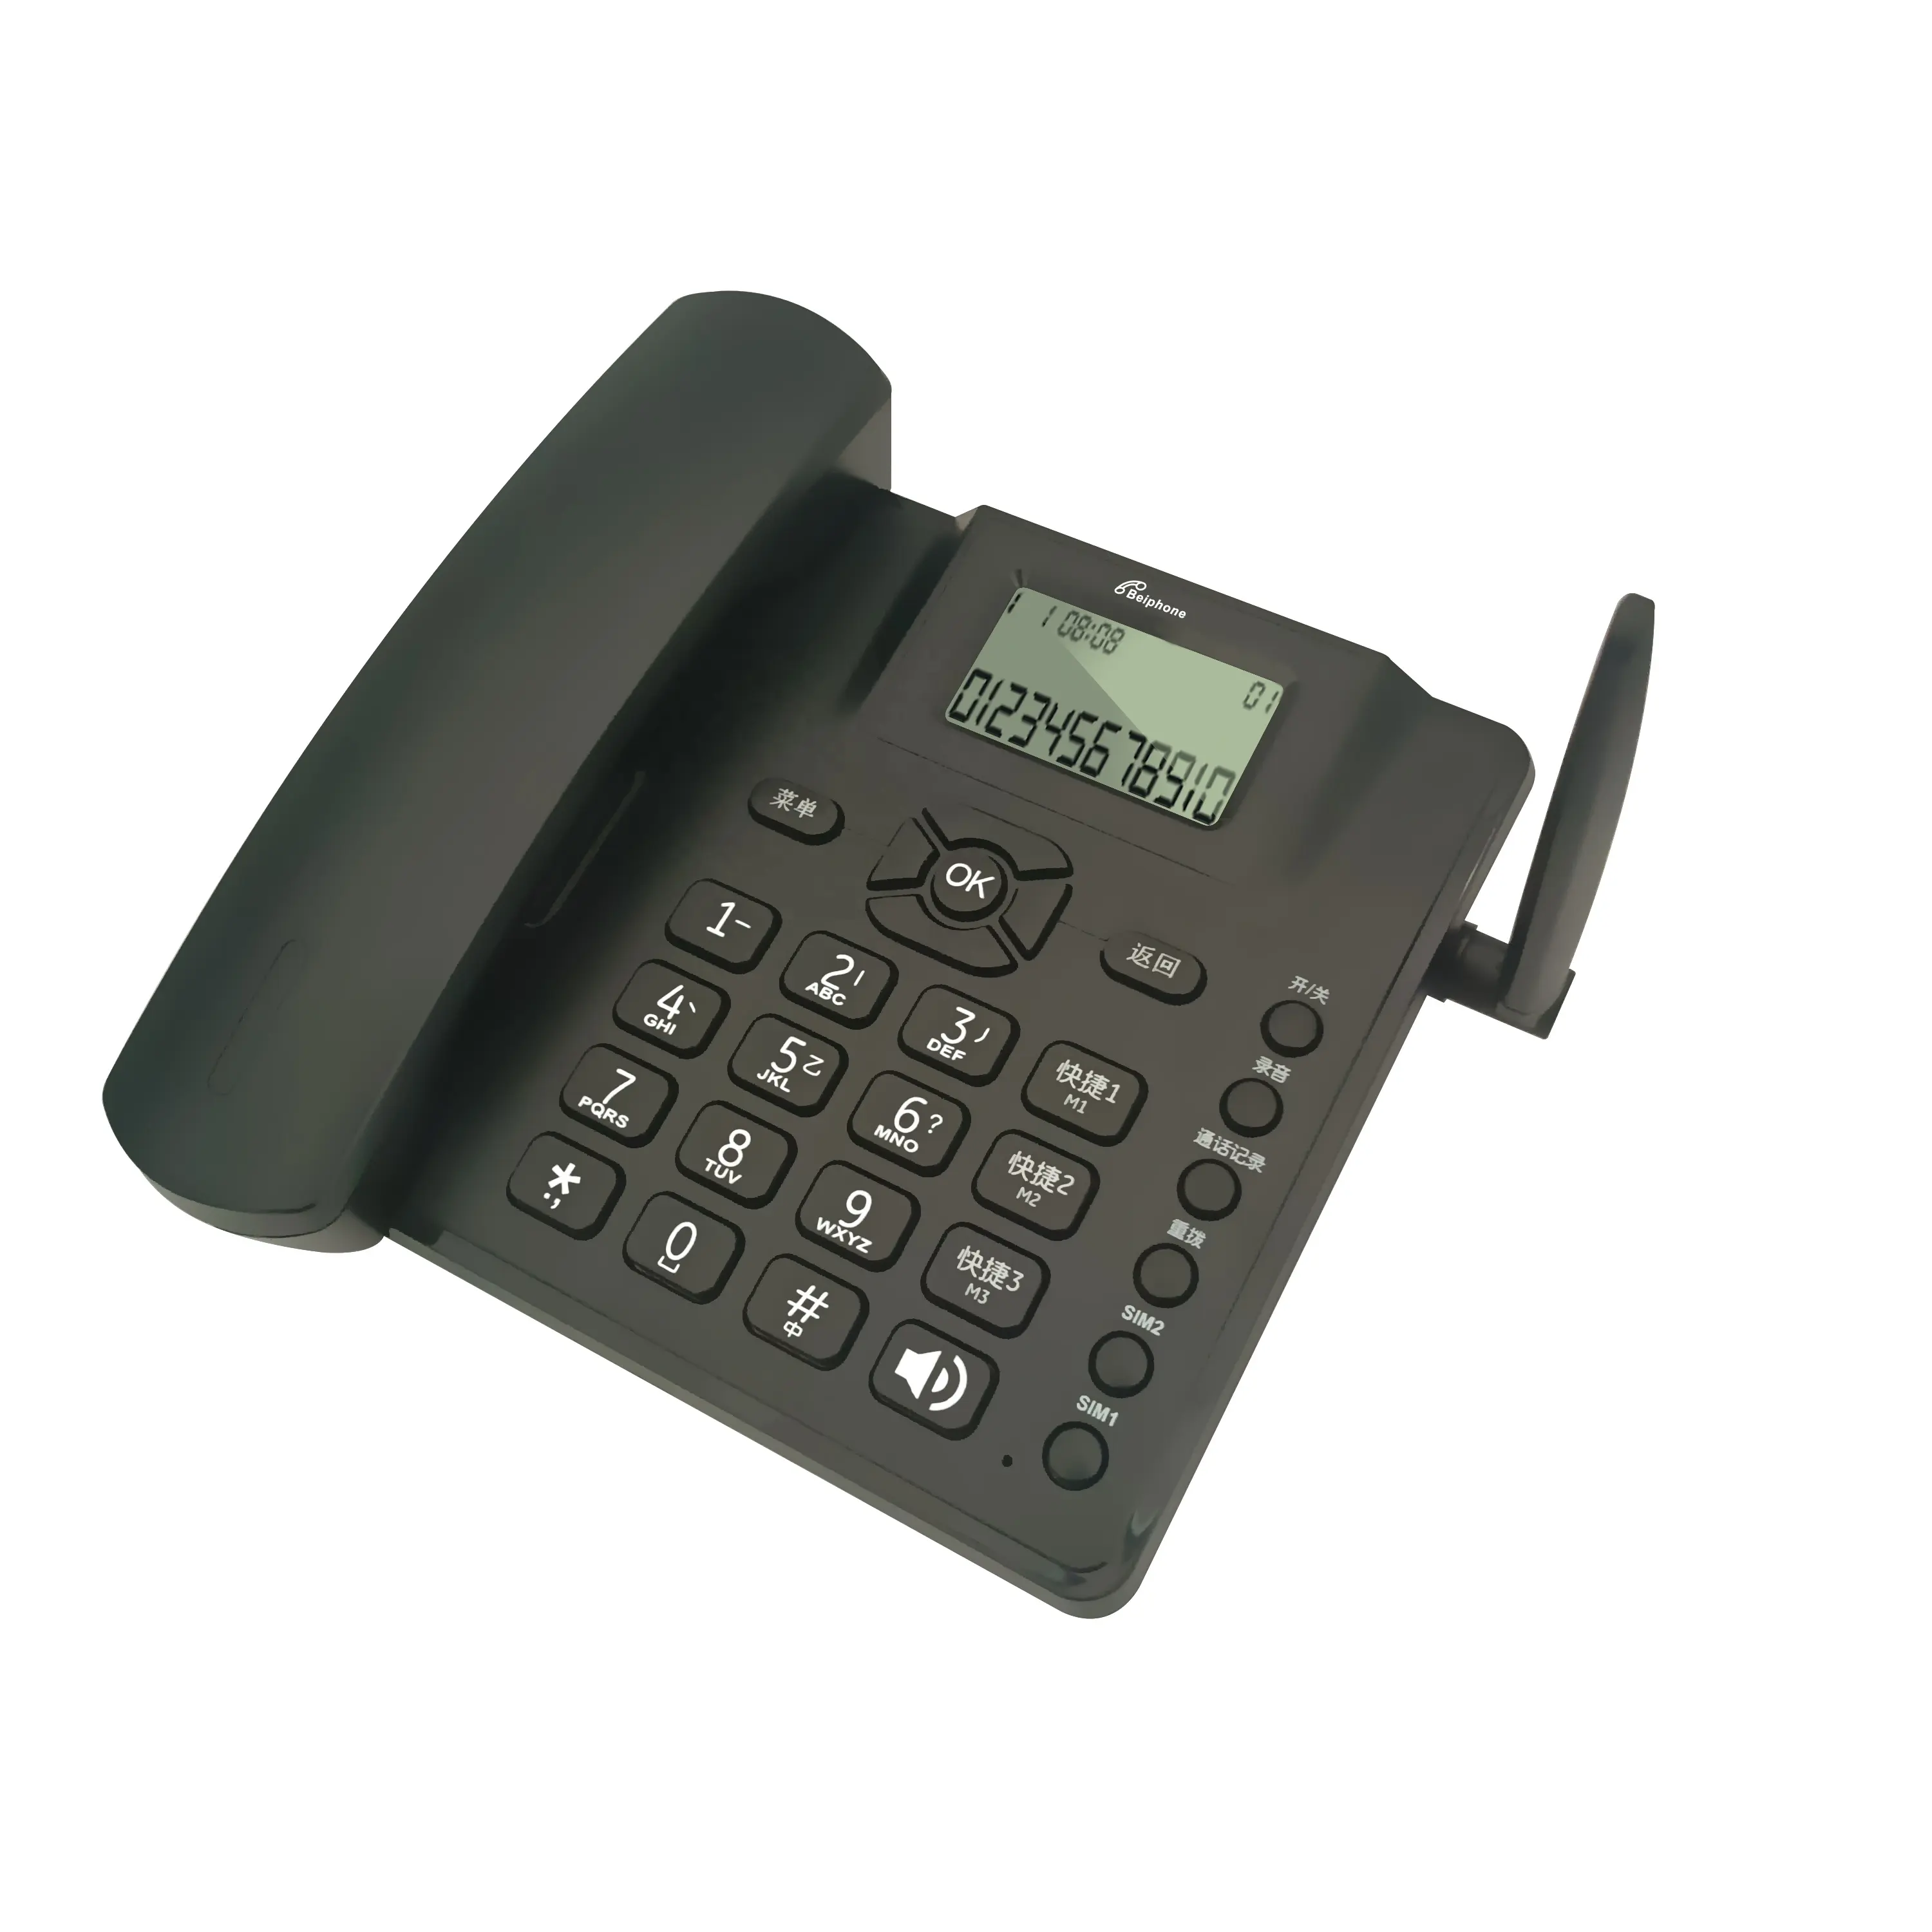 オフィスホームホテル発信者ID付き電話固定電話オールネットコムラジオGSM電話コードレス電話電話